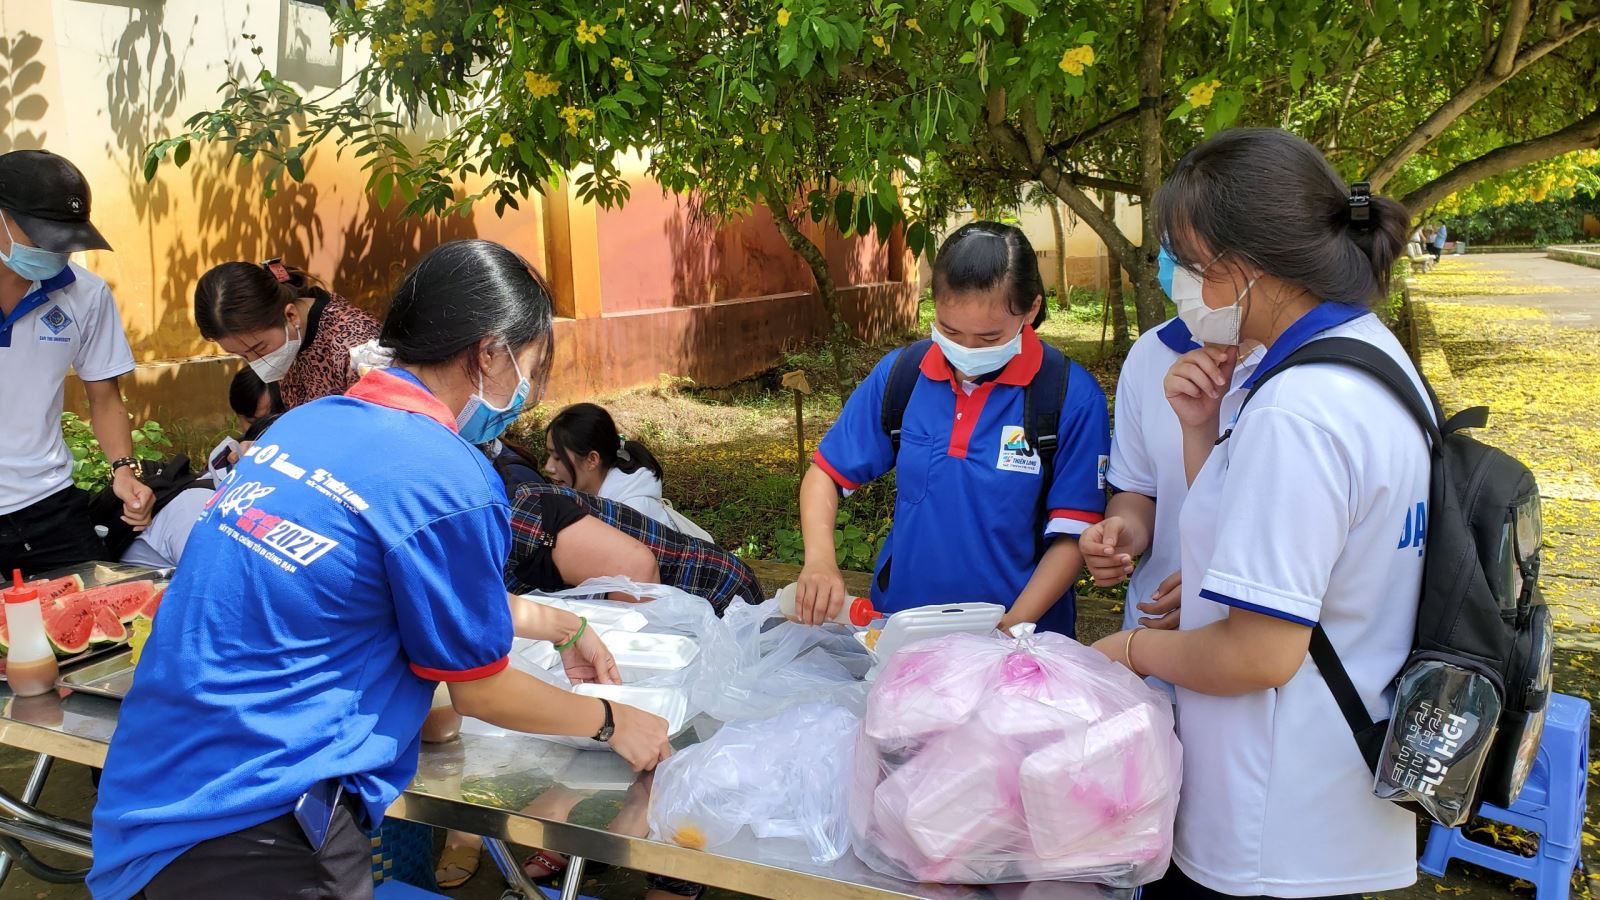 Thầy cô giáo cùng lực lượng tình nguyện viên chuẩn bị cơm trưa cho các thí sinh tại điểm trường THPT Phan Văn Trị, huyện Phong Điền, Cần Thơ.